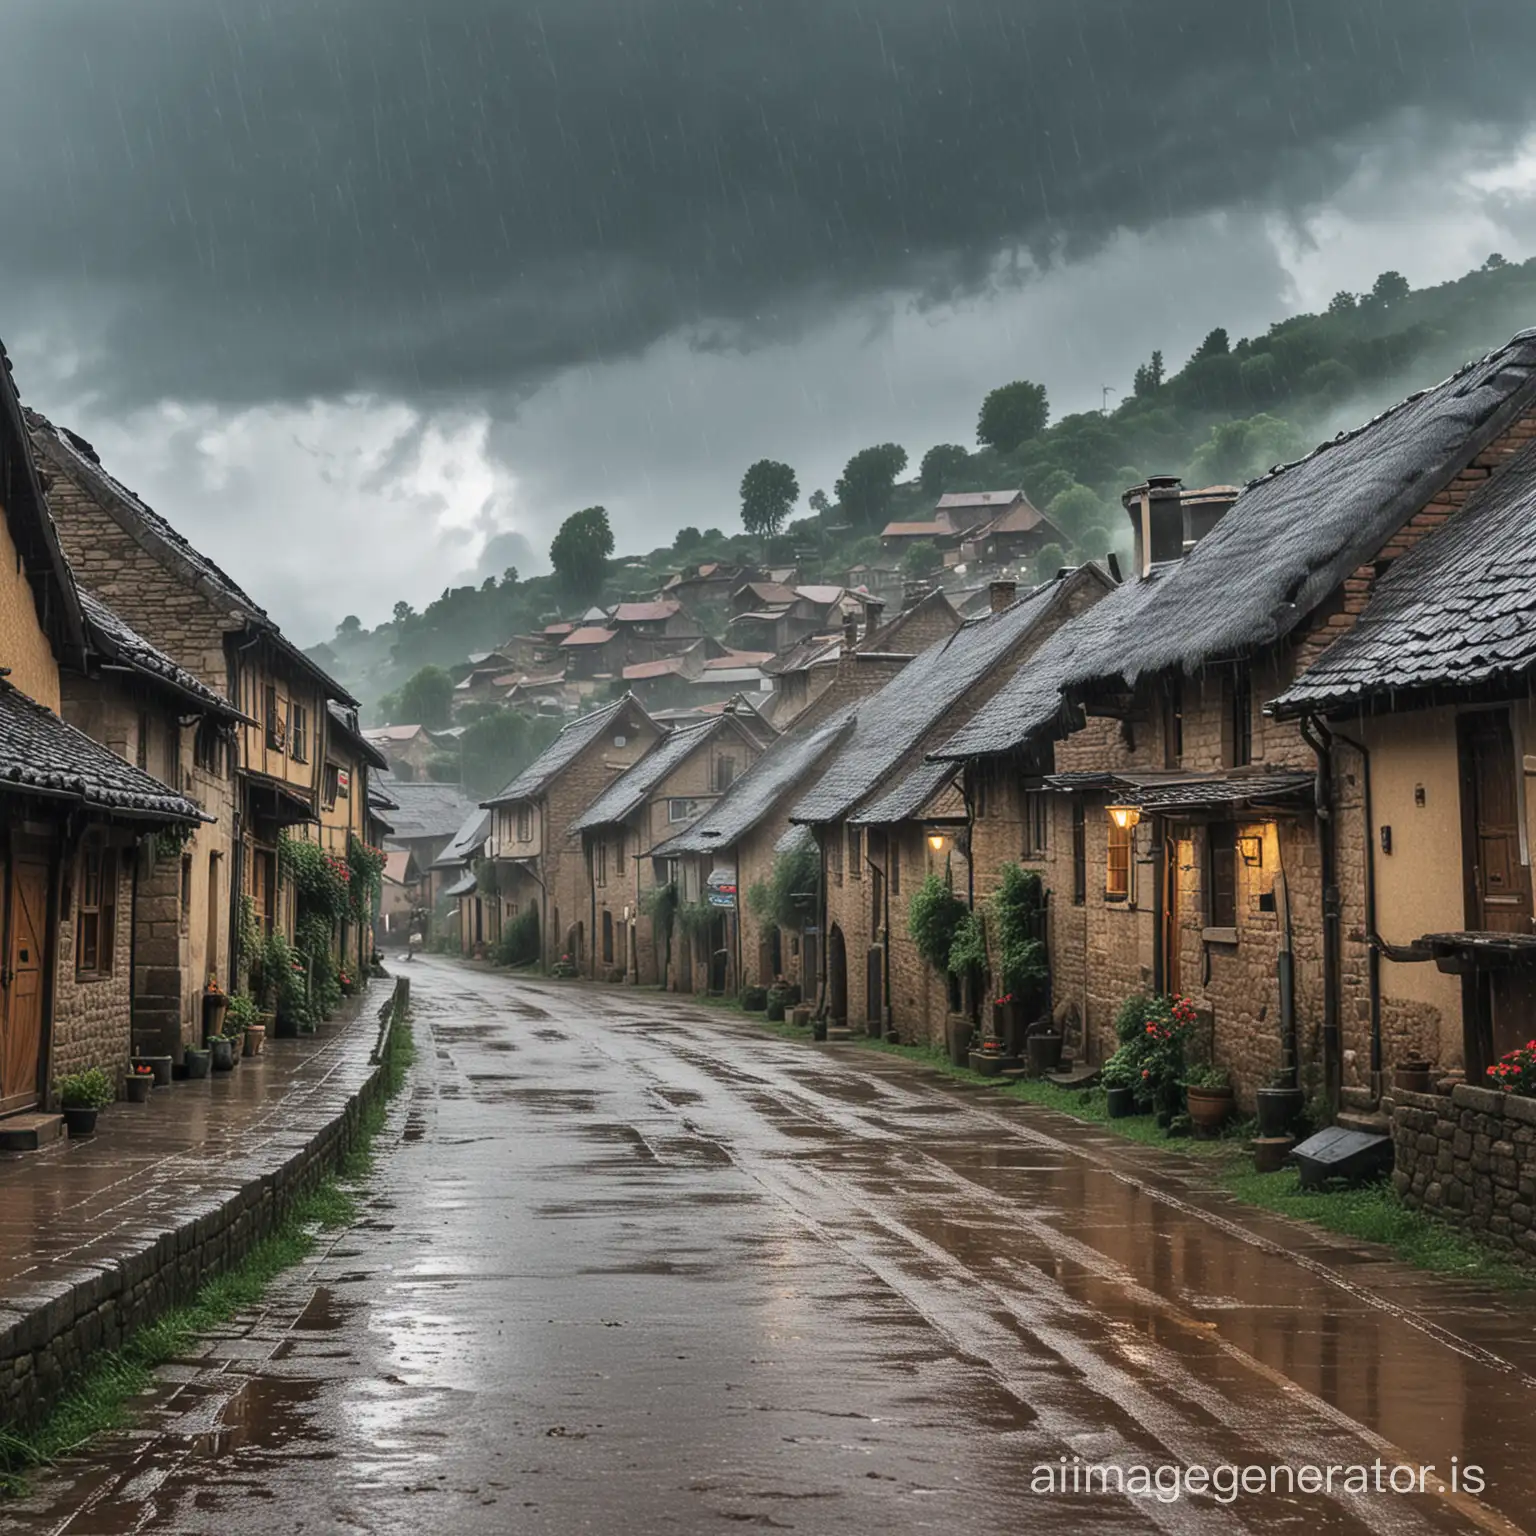 raining on a village